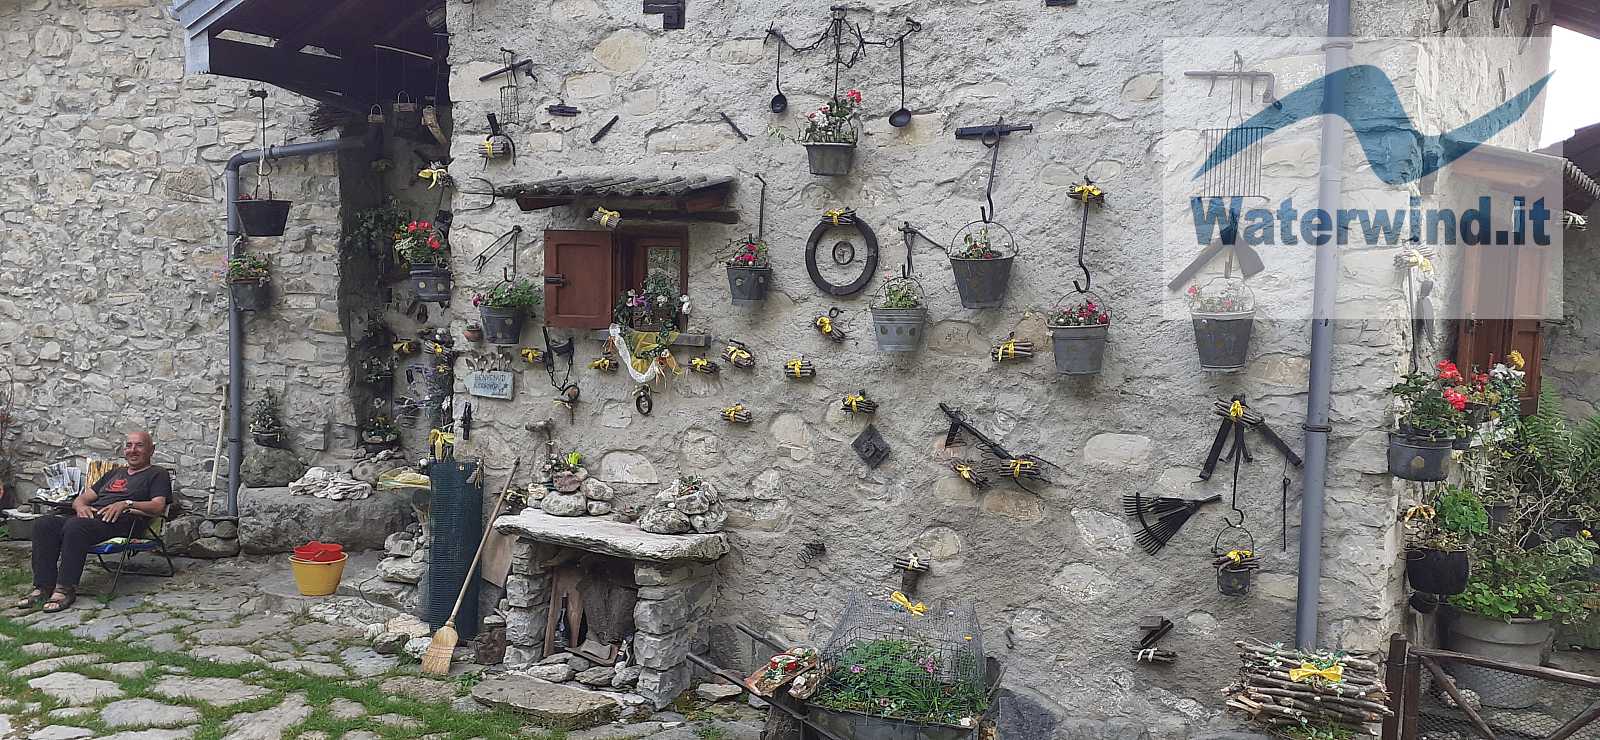 Casa tipica a Corniga, lungo il sentiero n. 3 - Pigra - Alpe di Colonno